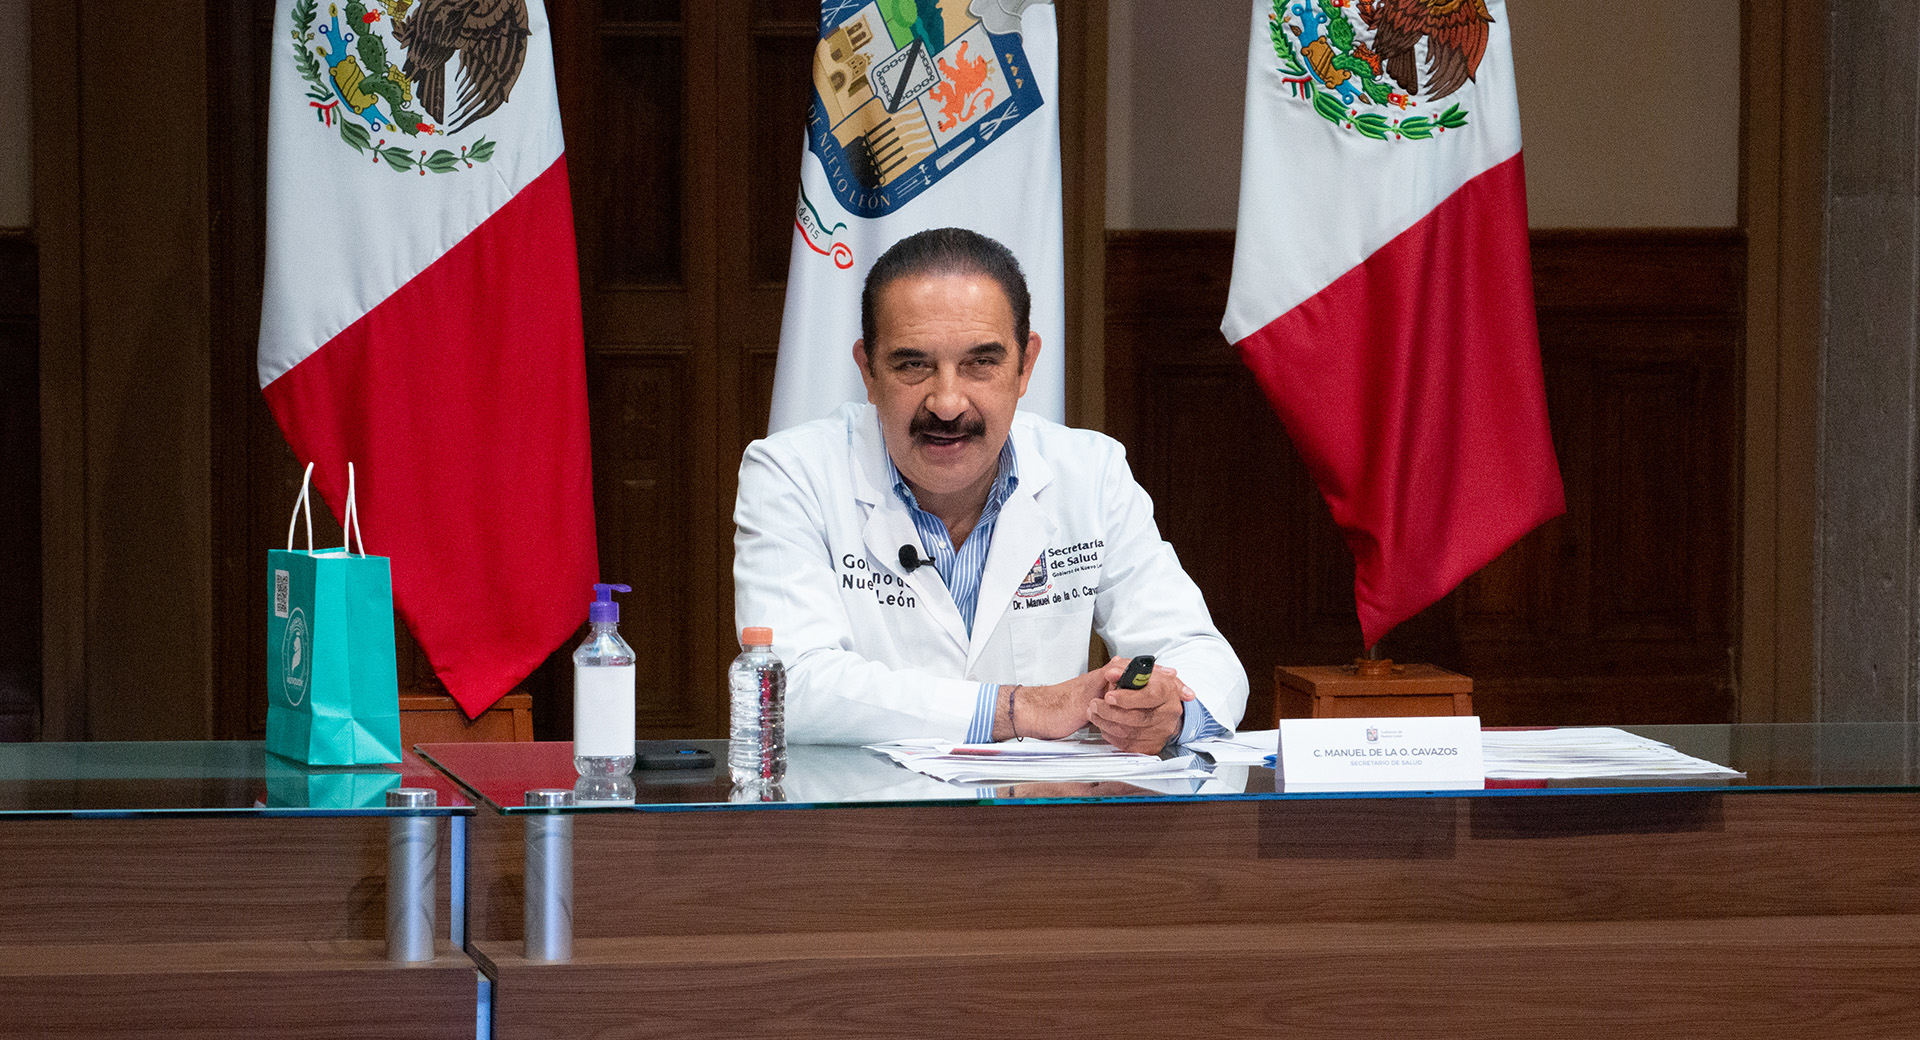 Descarta Nuevo León aplicar vacunas que no cumplen con guía oficial